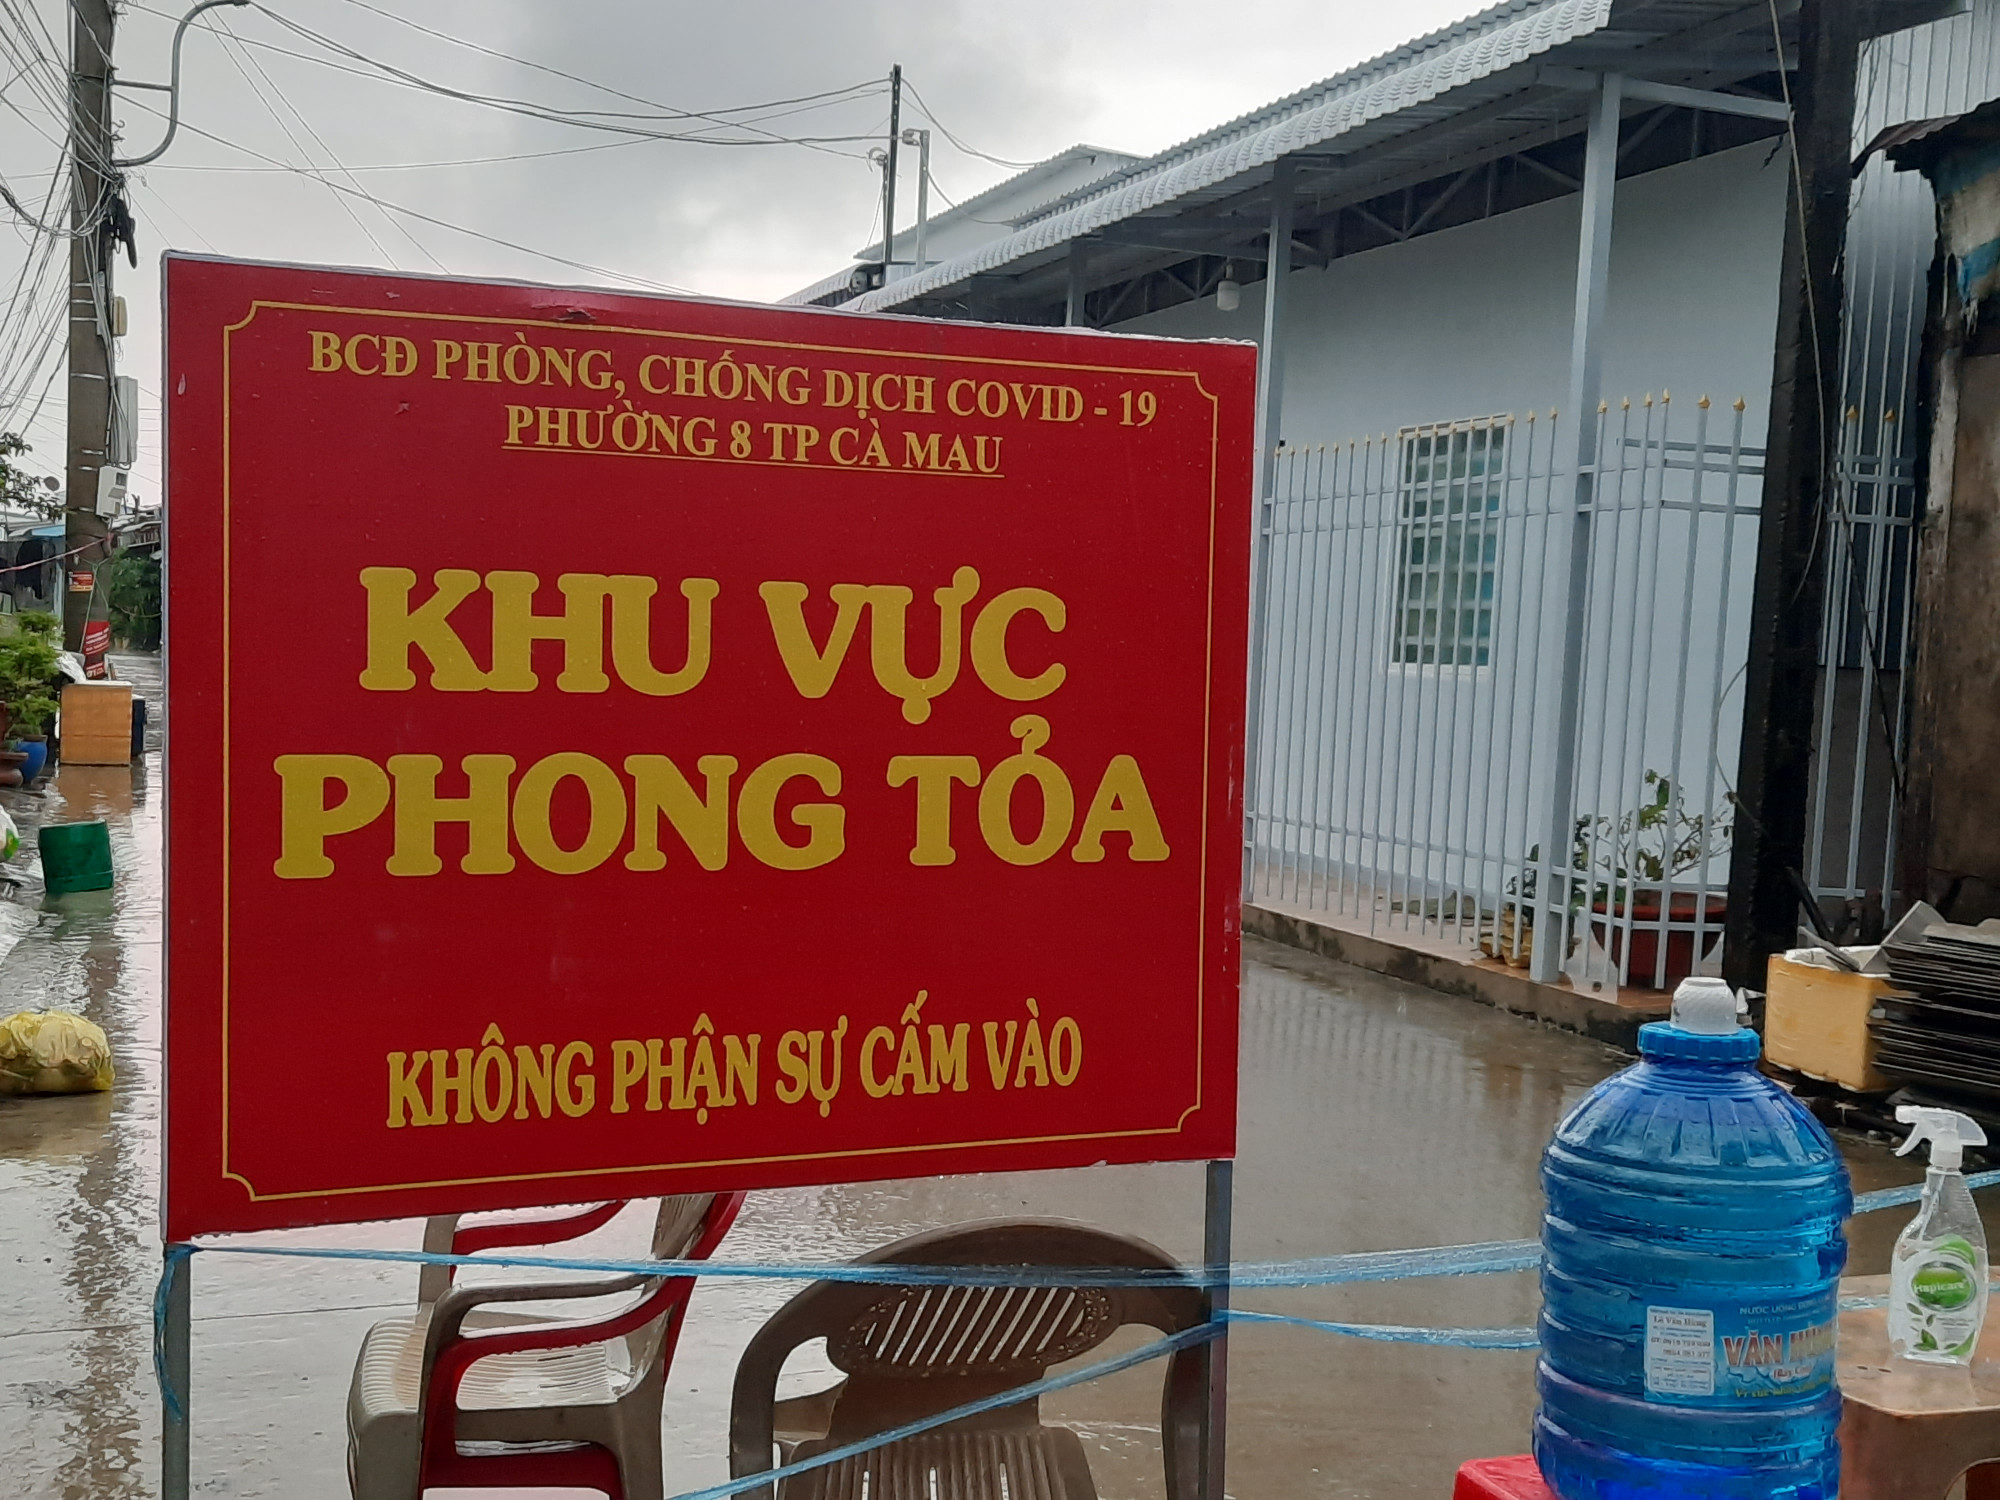 Chốt kiểm soát dịch bệnh tại khu vực hẻm 82/14, đường Nguyễn Thiện Năng, phường 4, TP. Cà Mau.